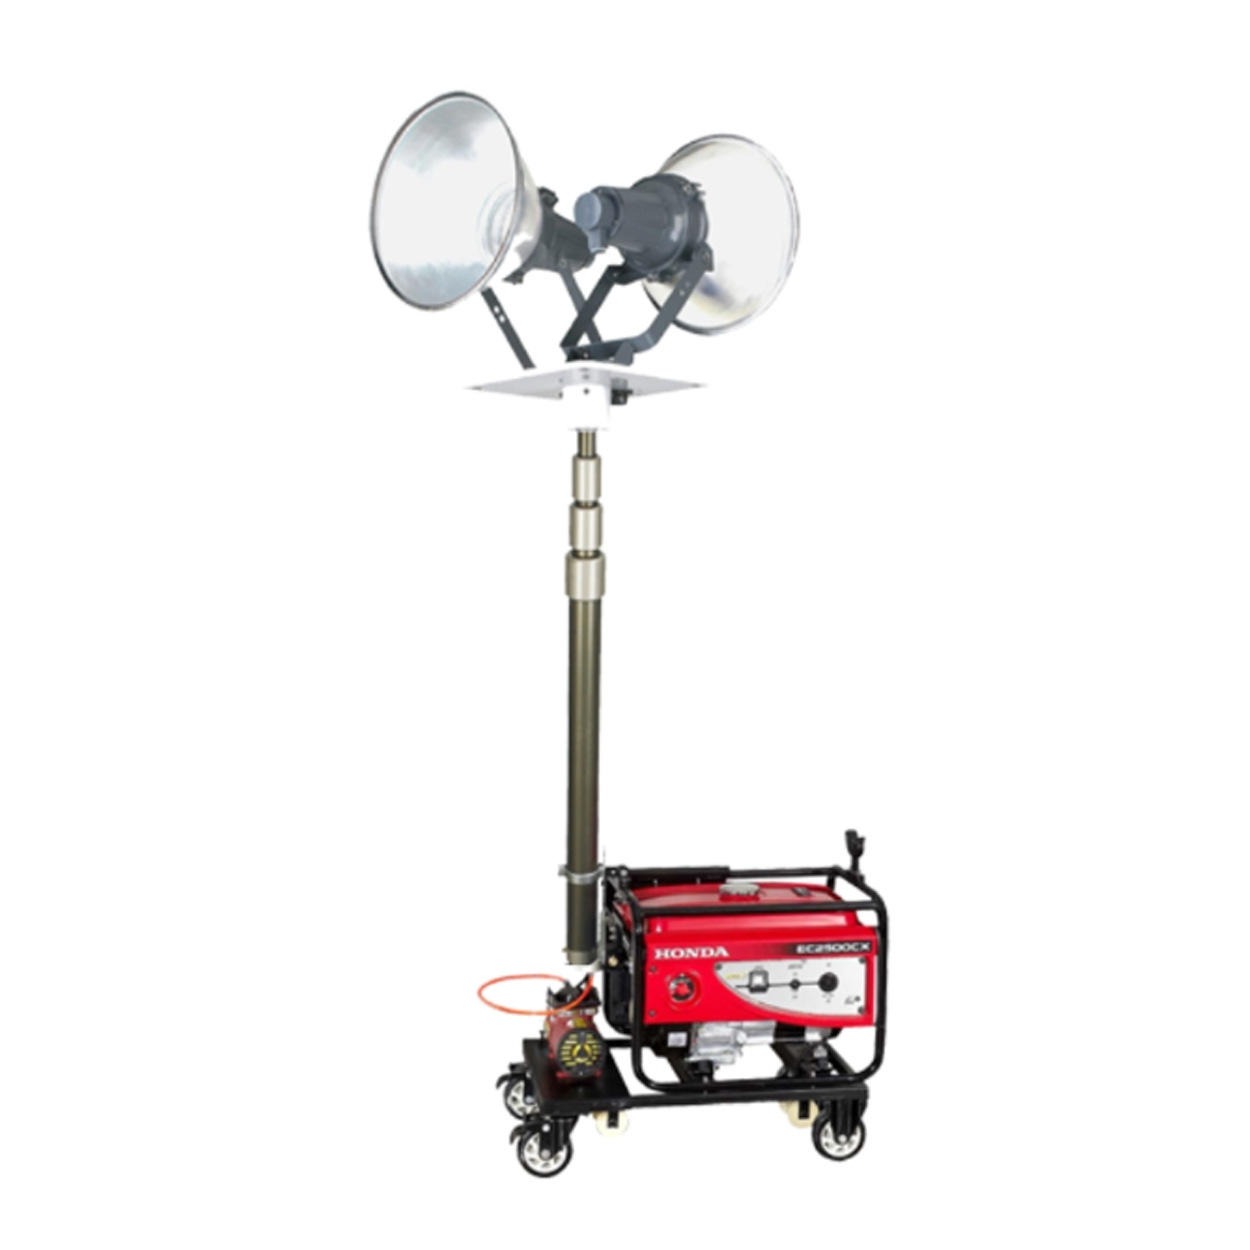 SFW6110B遥控自动升降工作灯 柴汽油发电机应急照明装置  夜间野外应急移动照明车  SFW6110C自动升降工作灯